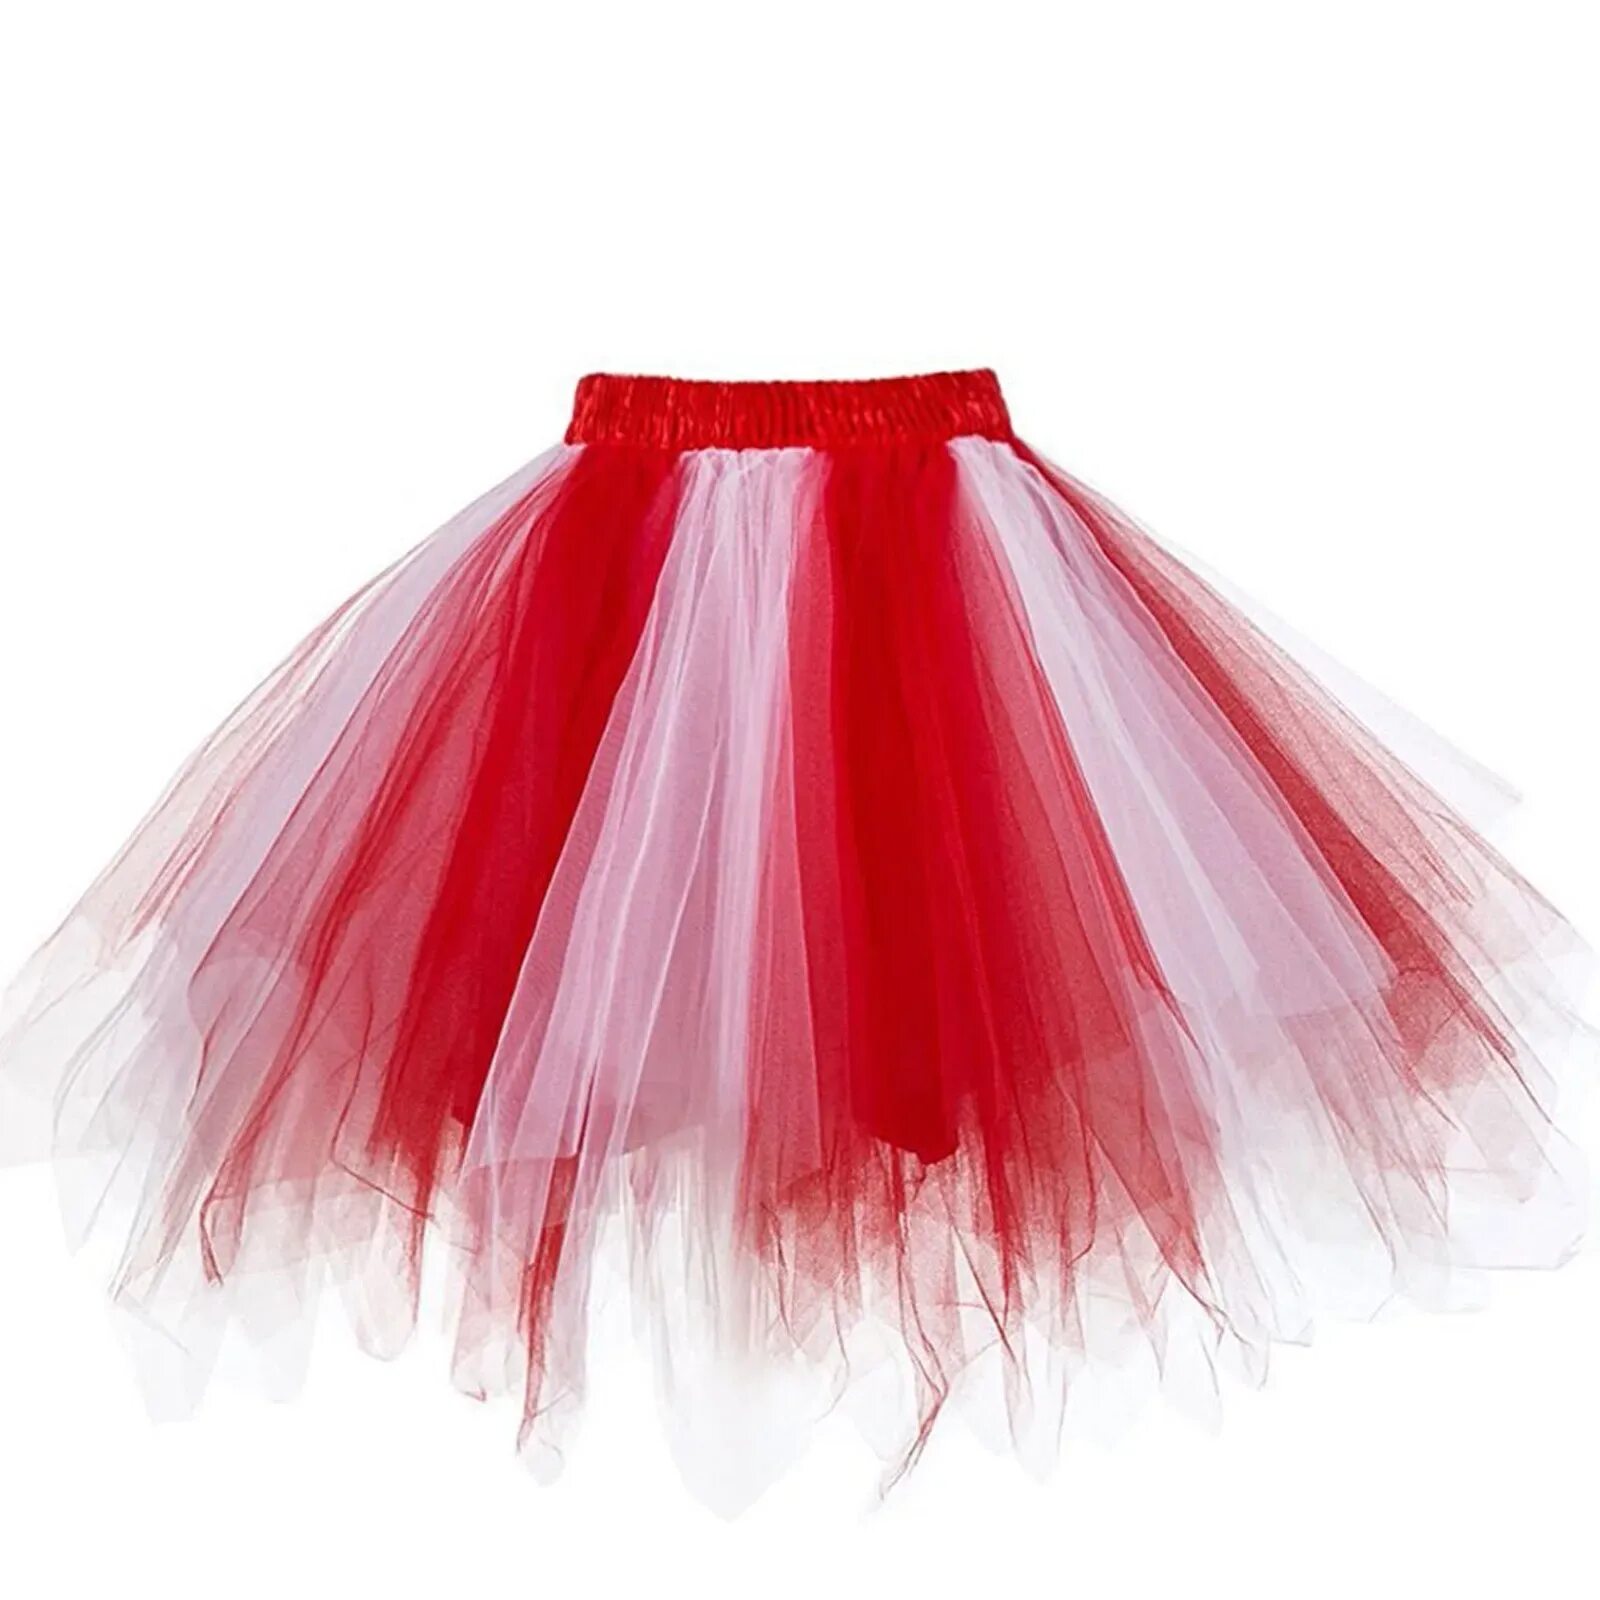 Юбка пачка. Красная фатиновая юбка для девочки. Красная фатиновая юбка. Красная юбка пачка. Фатин красный